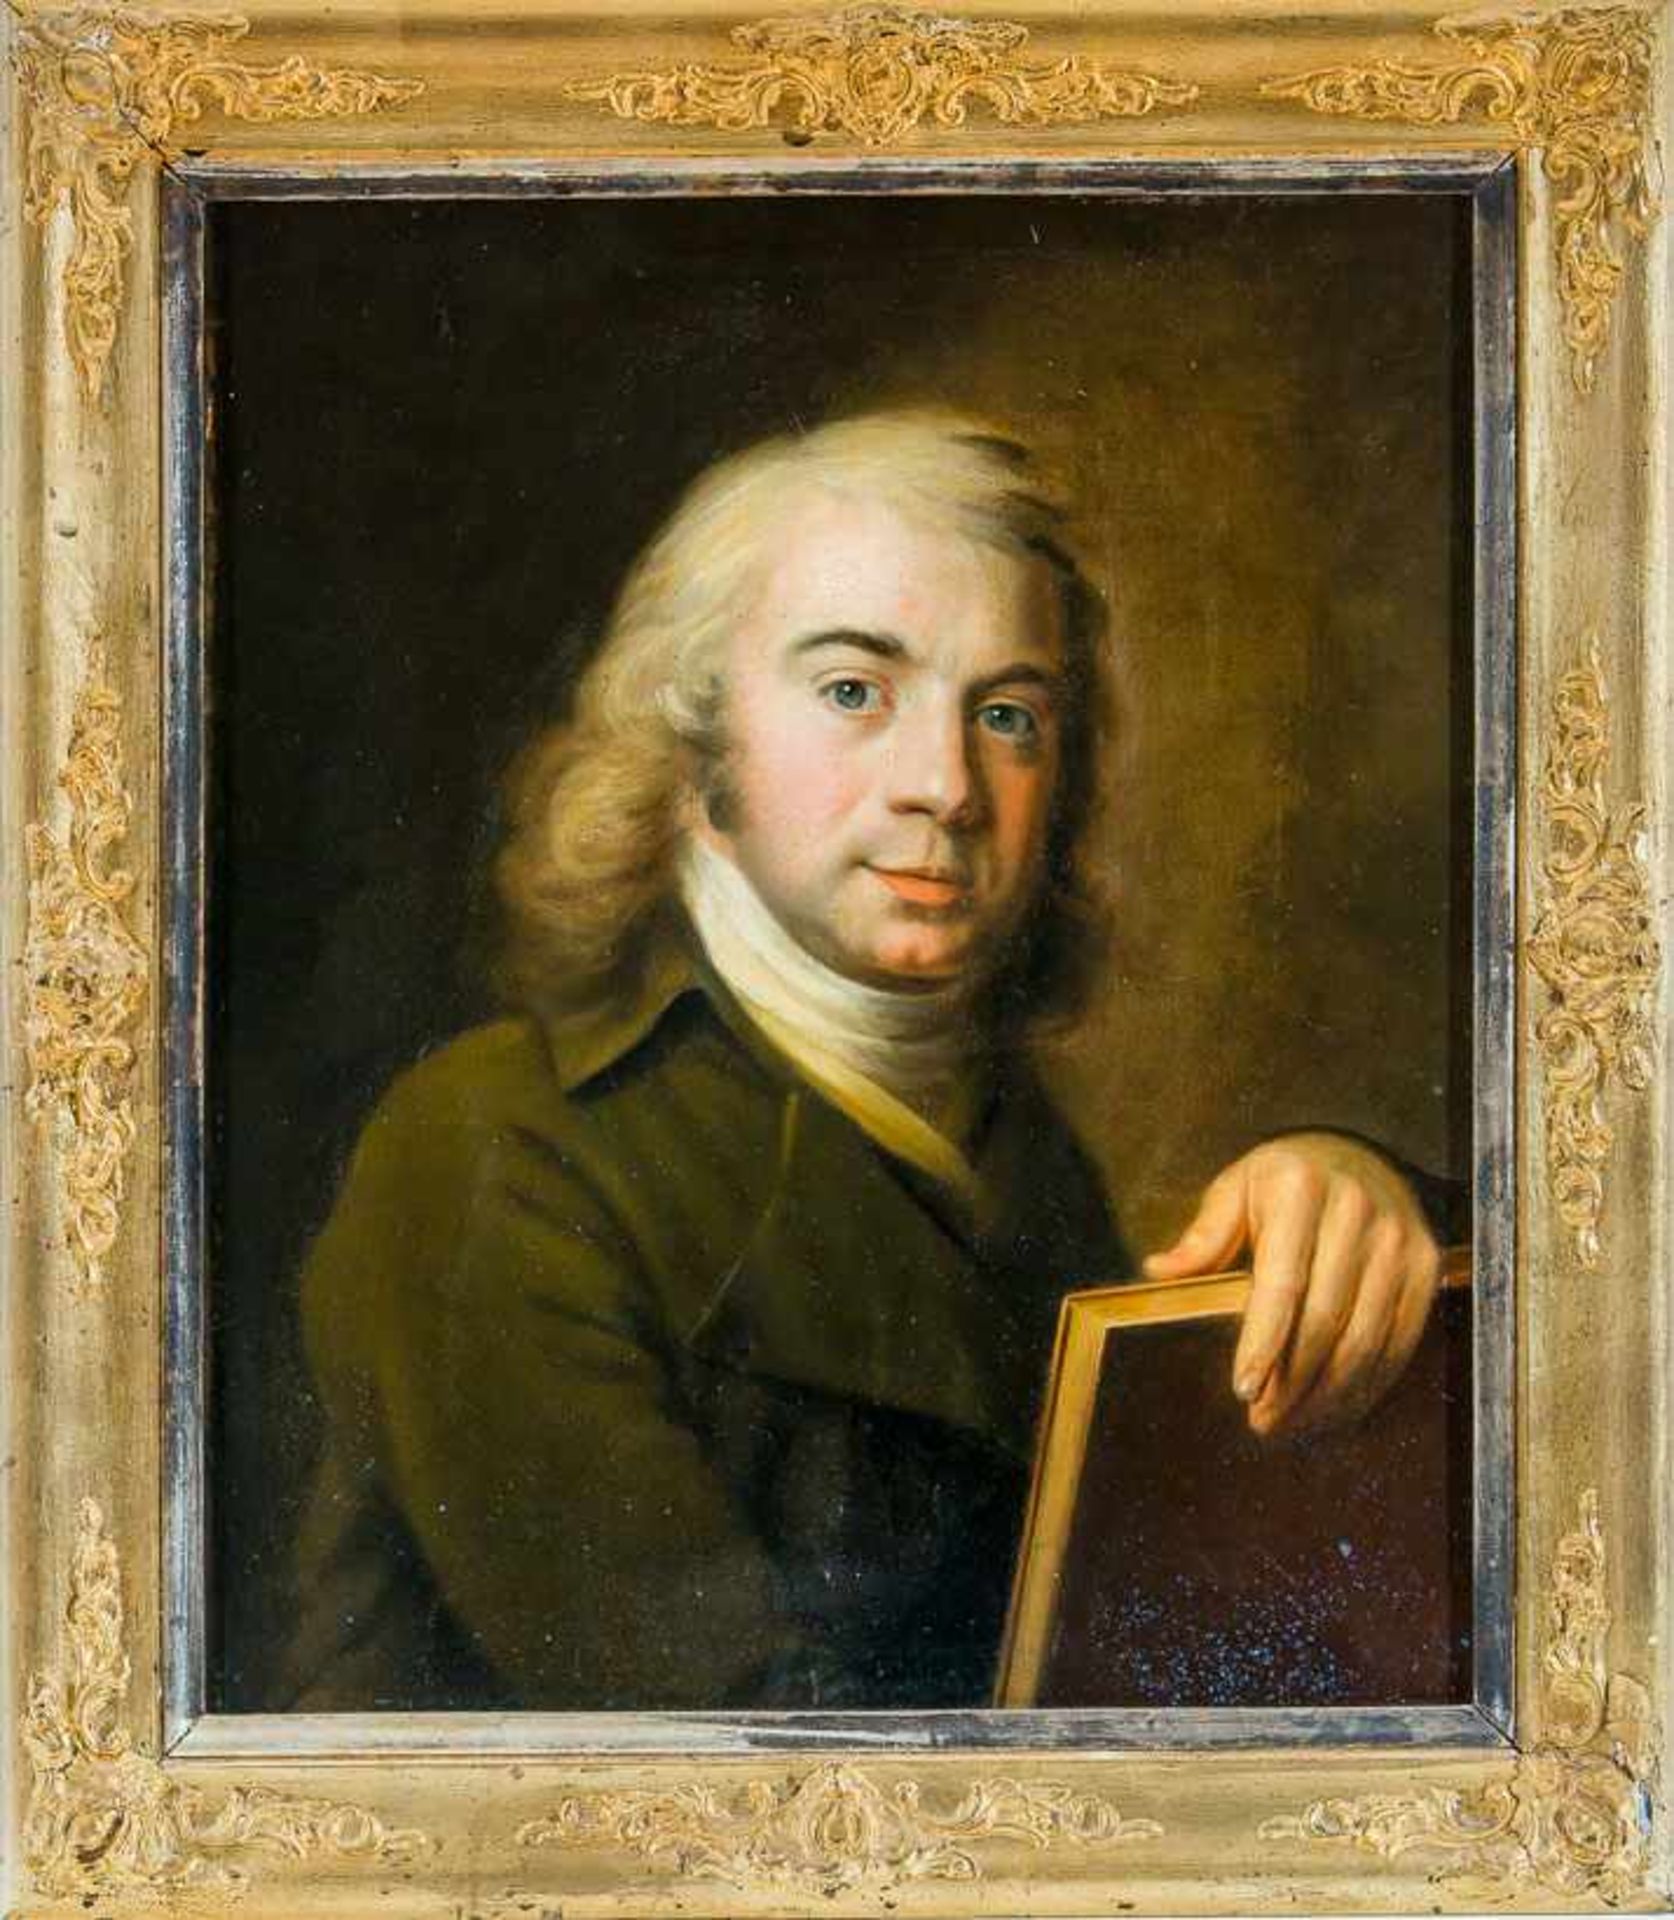 Porträtmaler (um 1790)Brustbildnis eines jüngeren Mannes mit graublondem, lockigem HaarIn